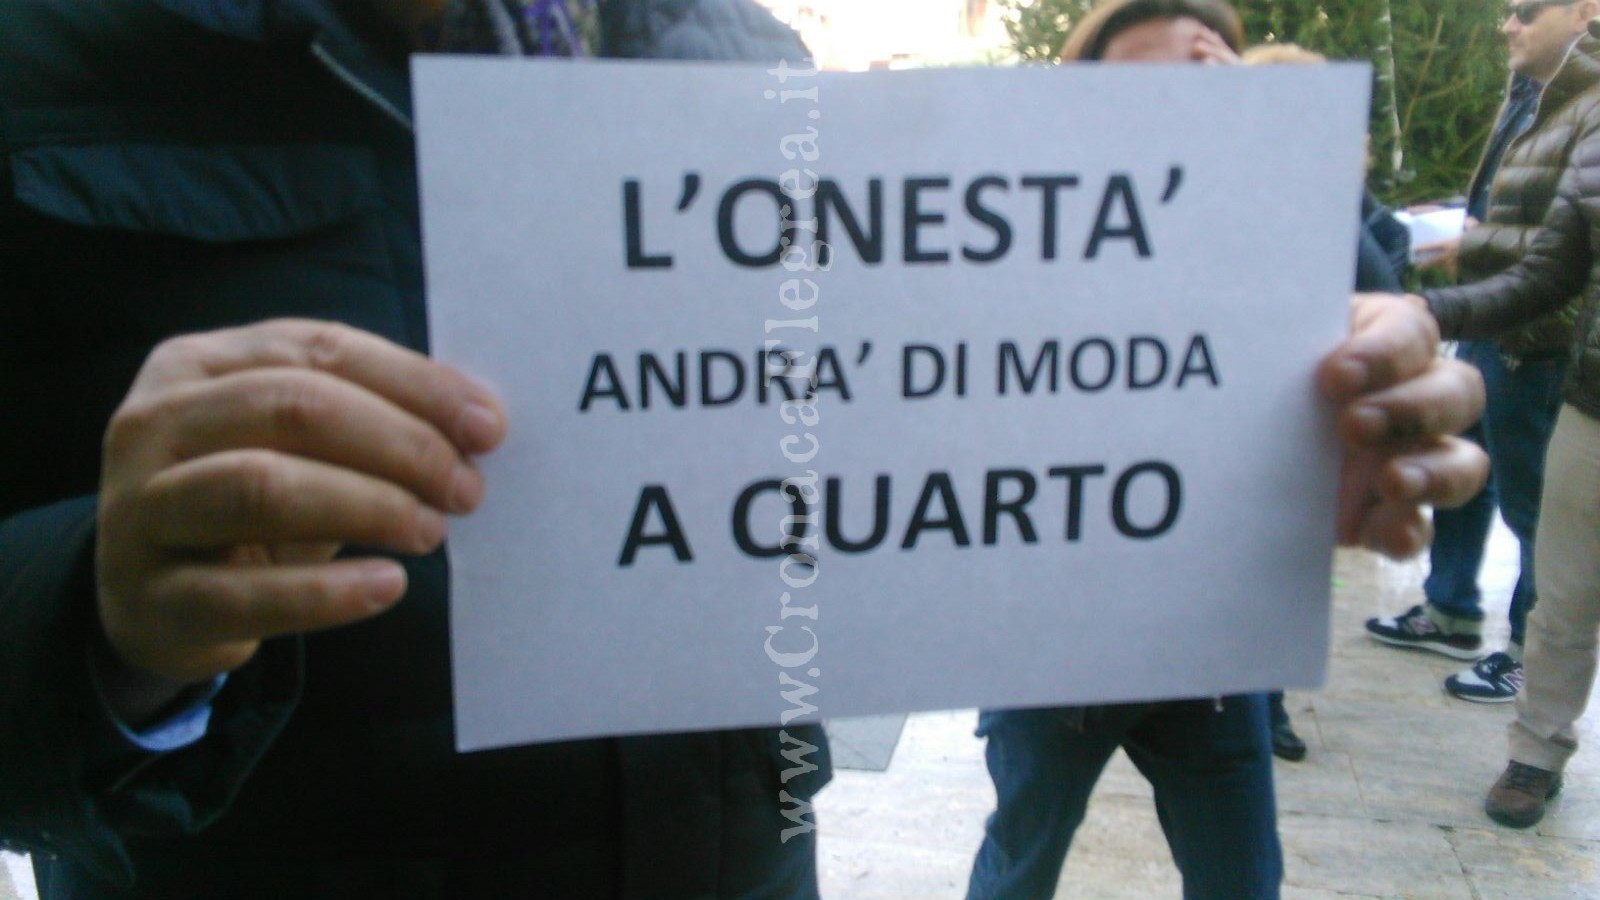 CASO-QUARTO/ Protesta al consiglio comunale, grida contro il sindaco: “onestà” – LE FOTO